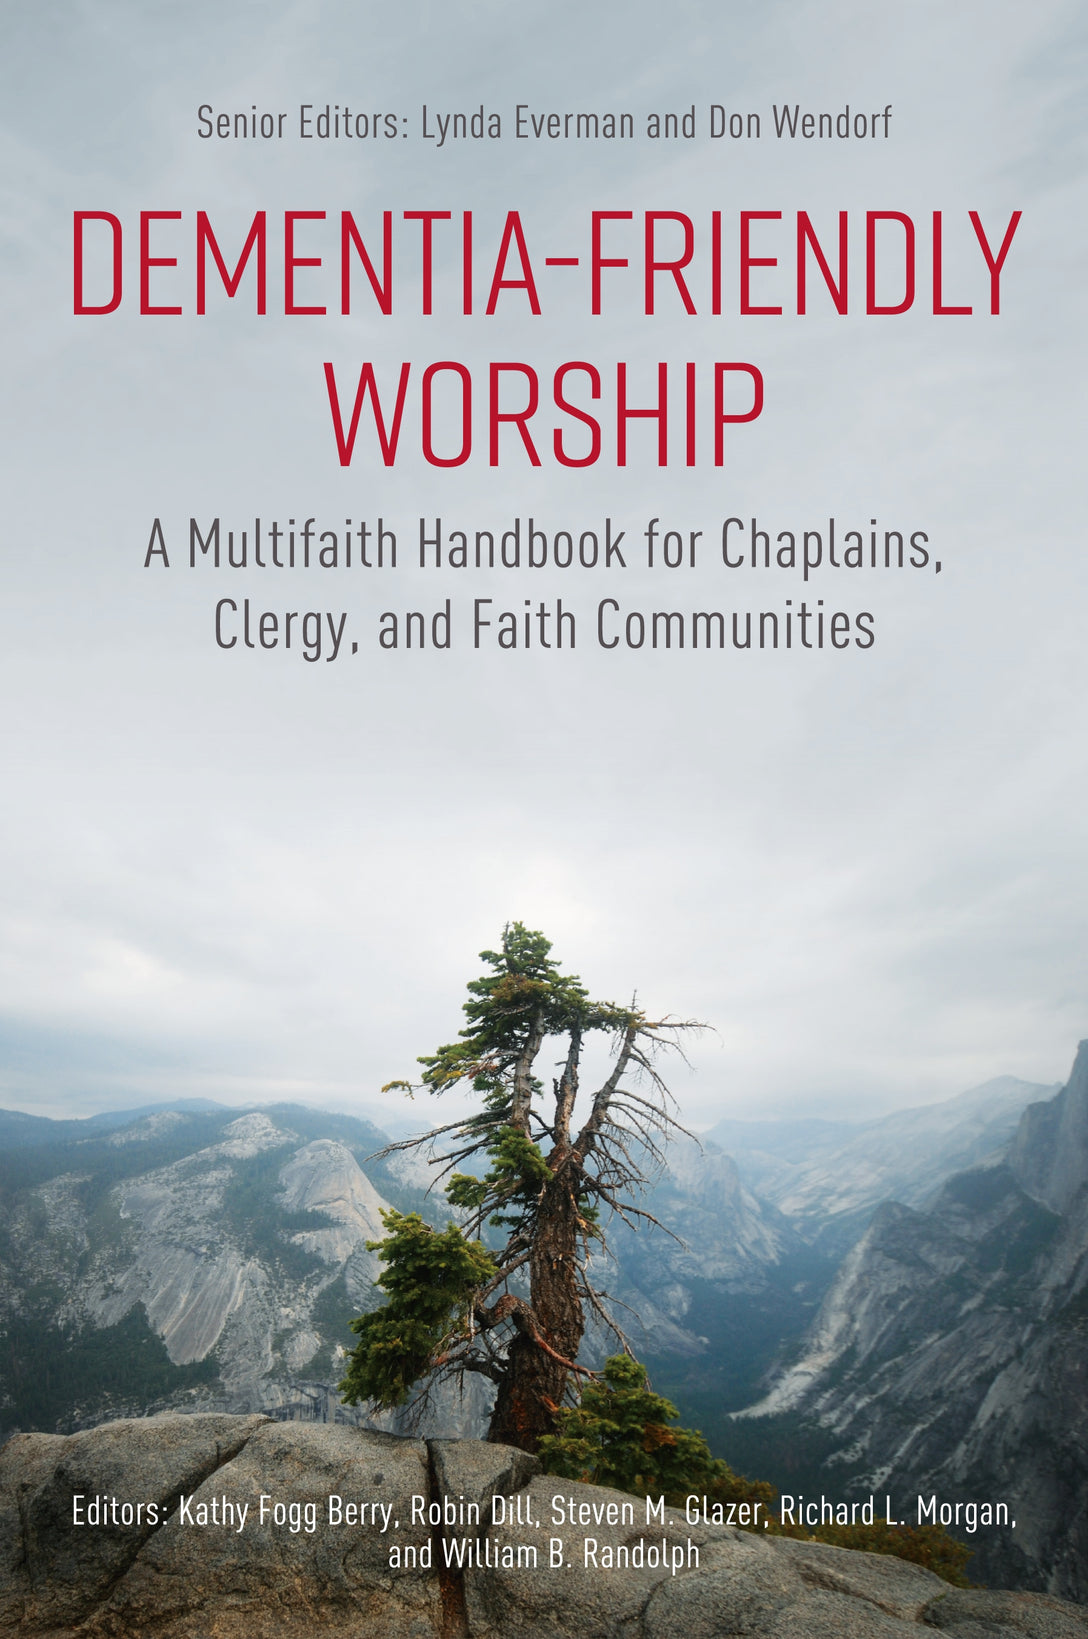 Dementia-Friendly Worship by Virginia Biggar, Lynda Everman, Steven M. Glazer, No Author Listed